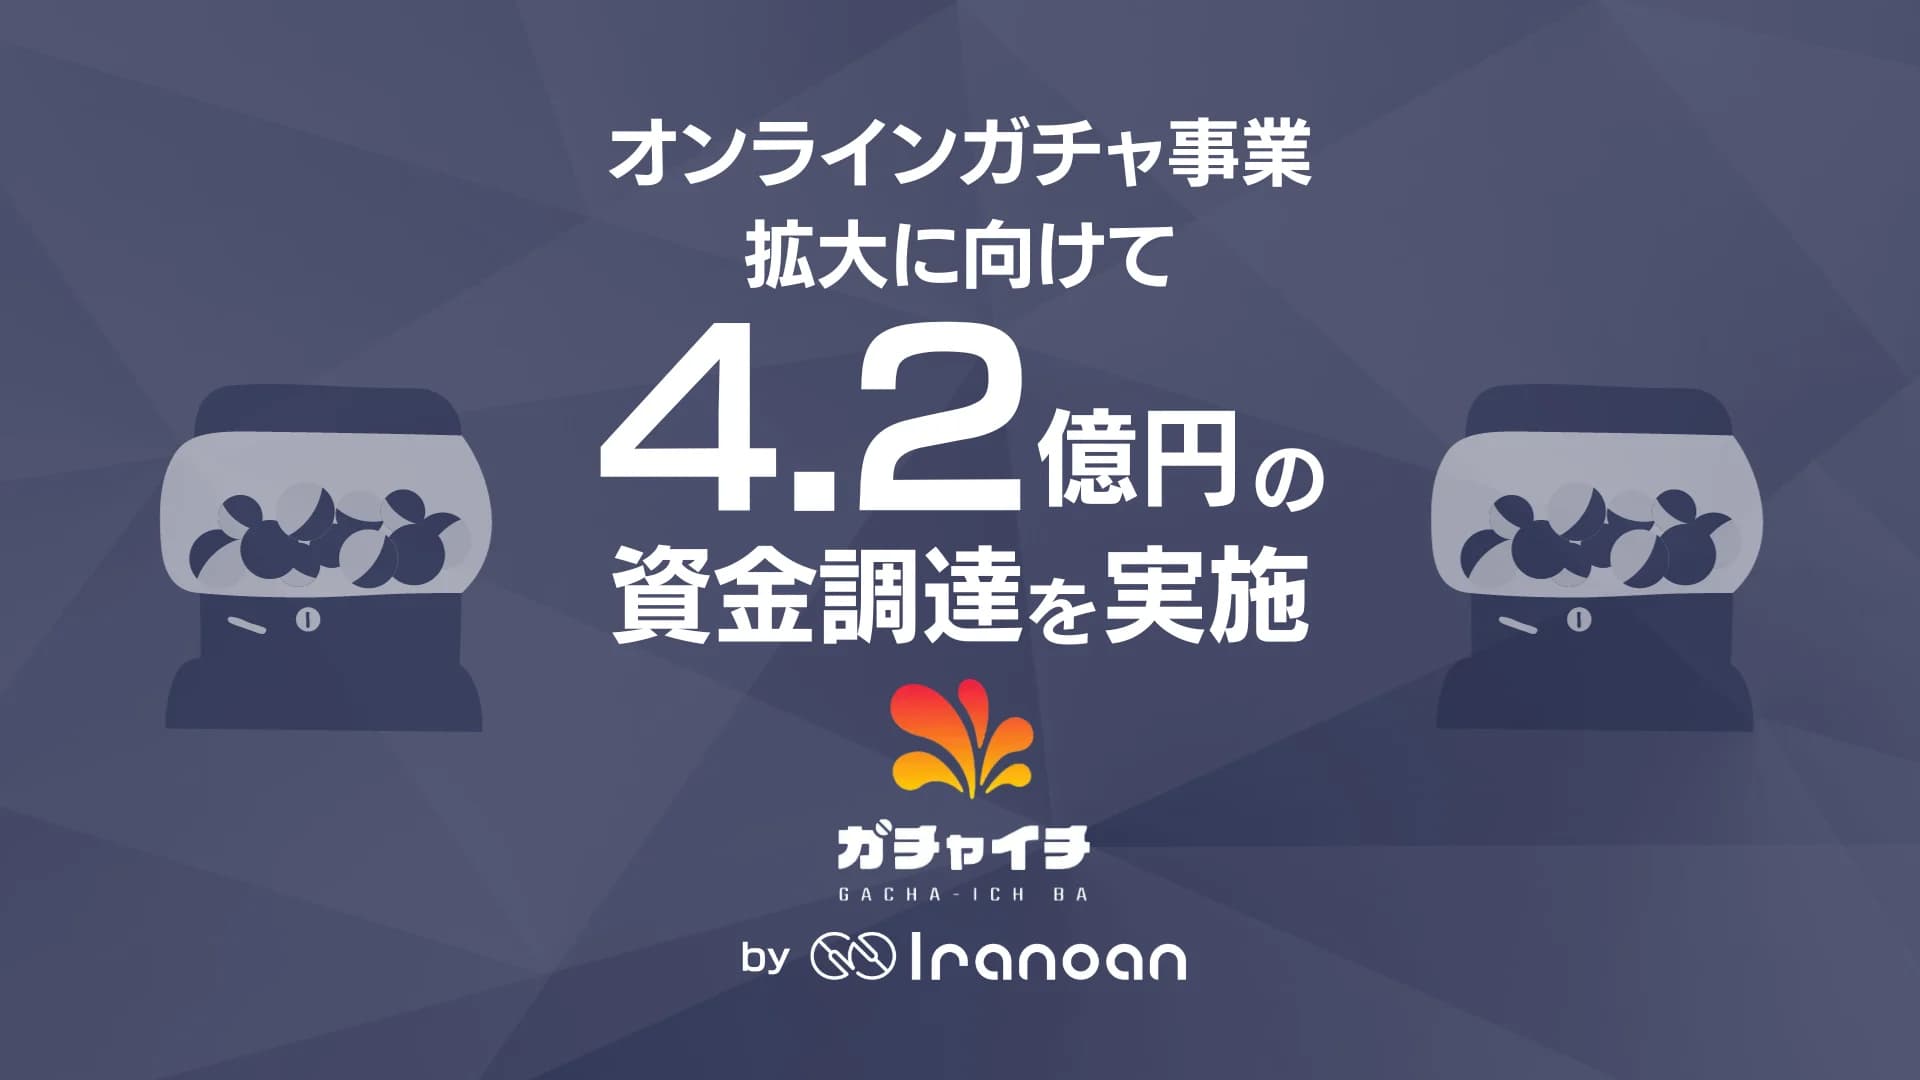 オンラインガチャを展開する株式会社Iranoan、4.2億円の資金調達